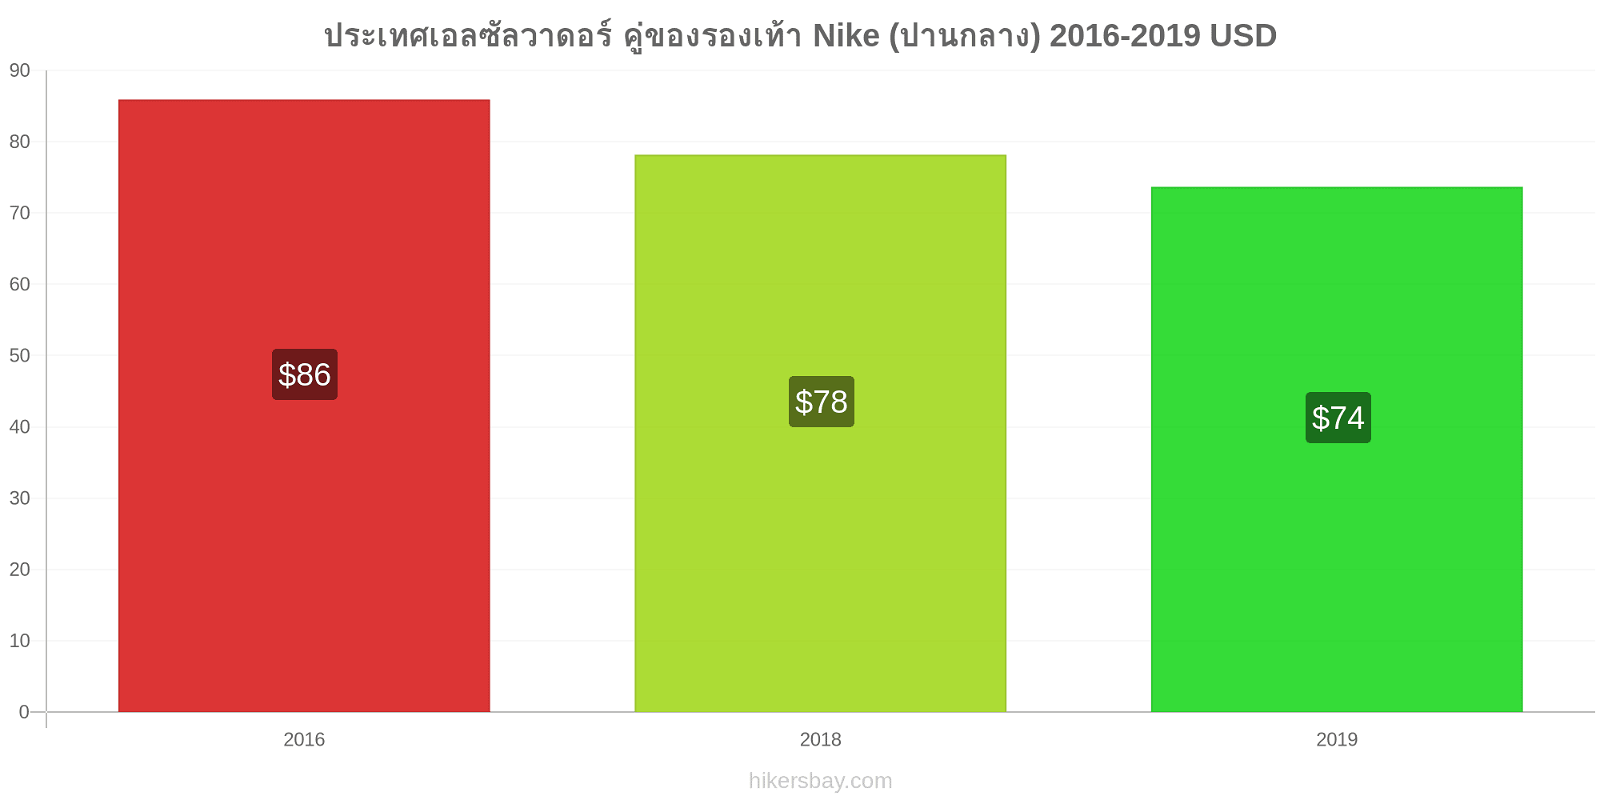 ประเทศเอลซัลวาดอร์ การเปลี่ยนแปลงราคา คู่ของรองเท้า Nike (ปานกลาง) hikersbay.com